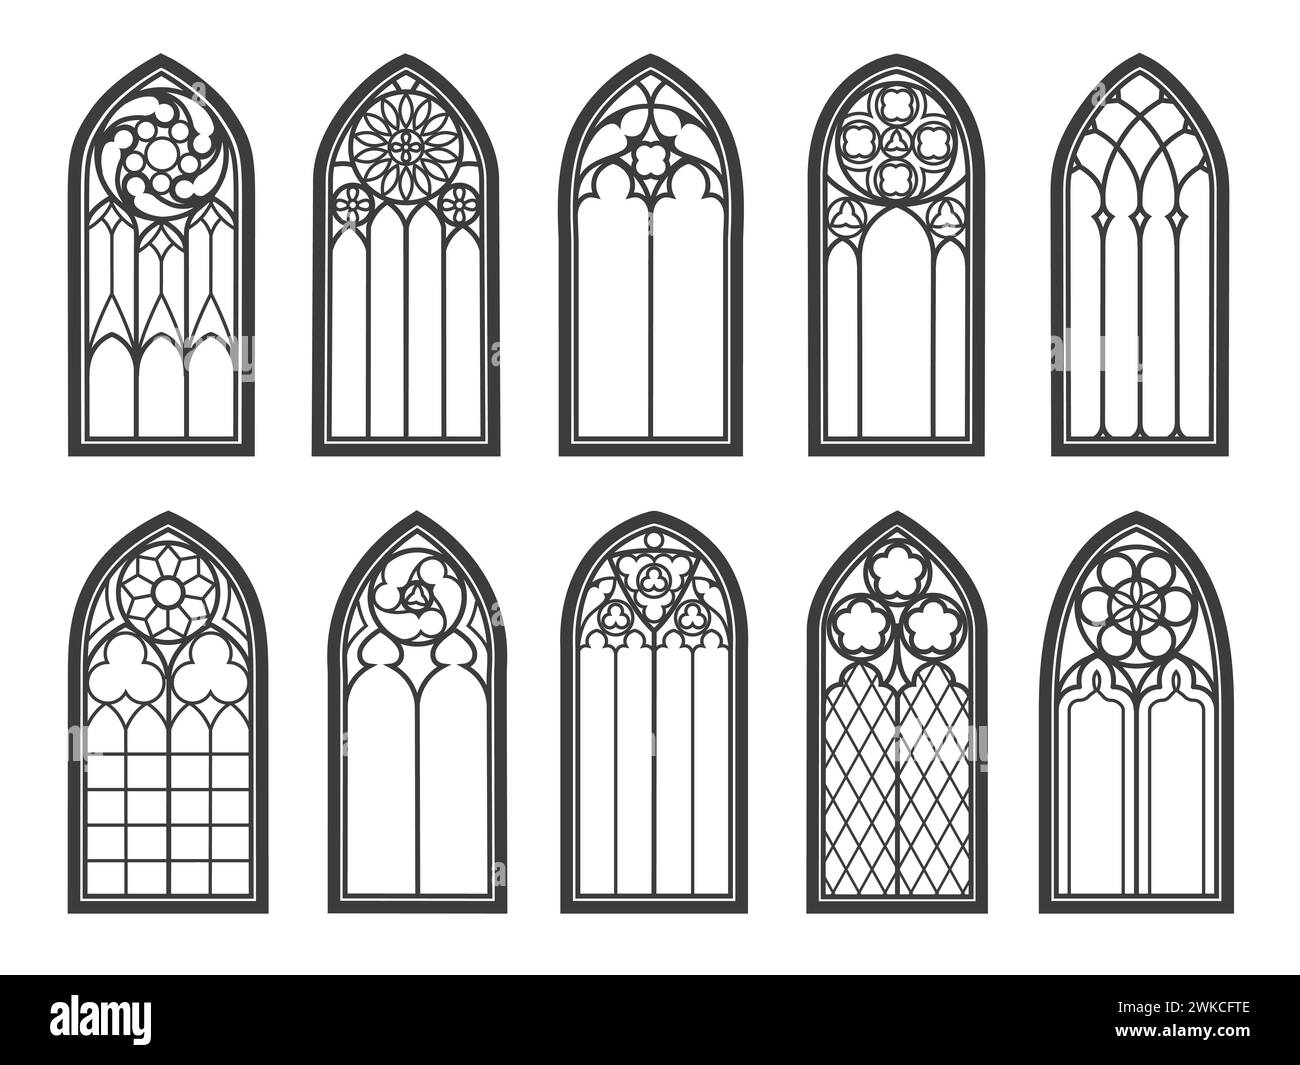 Mittelalterliche gotische Kirchenfenster und Schlossbögen der Kathedrale, Vektorarchitektur. Alte gotische Fenster mit Buntglasmuster im Bogen oder antiken Tempel und Fenster der Renaissance-Kirche Stock Vektor